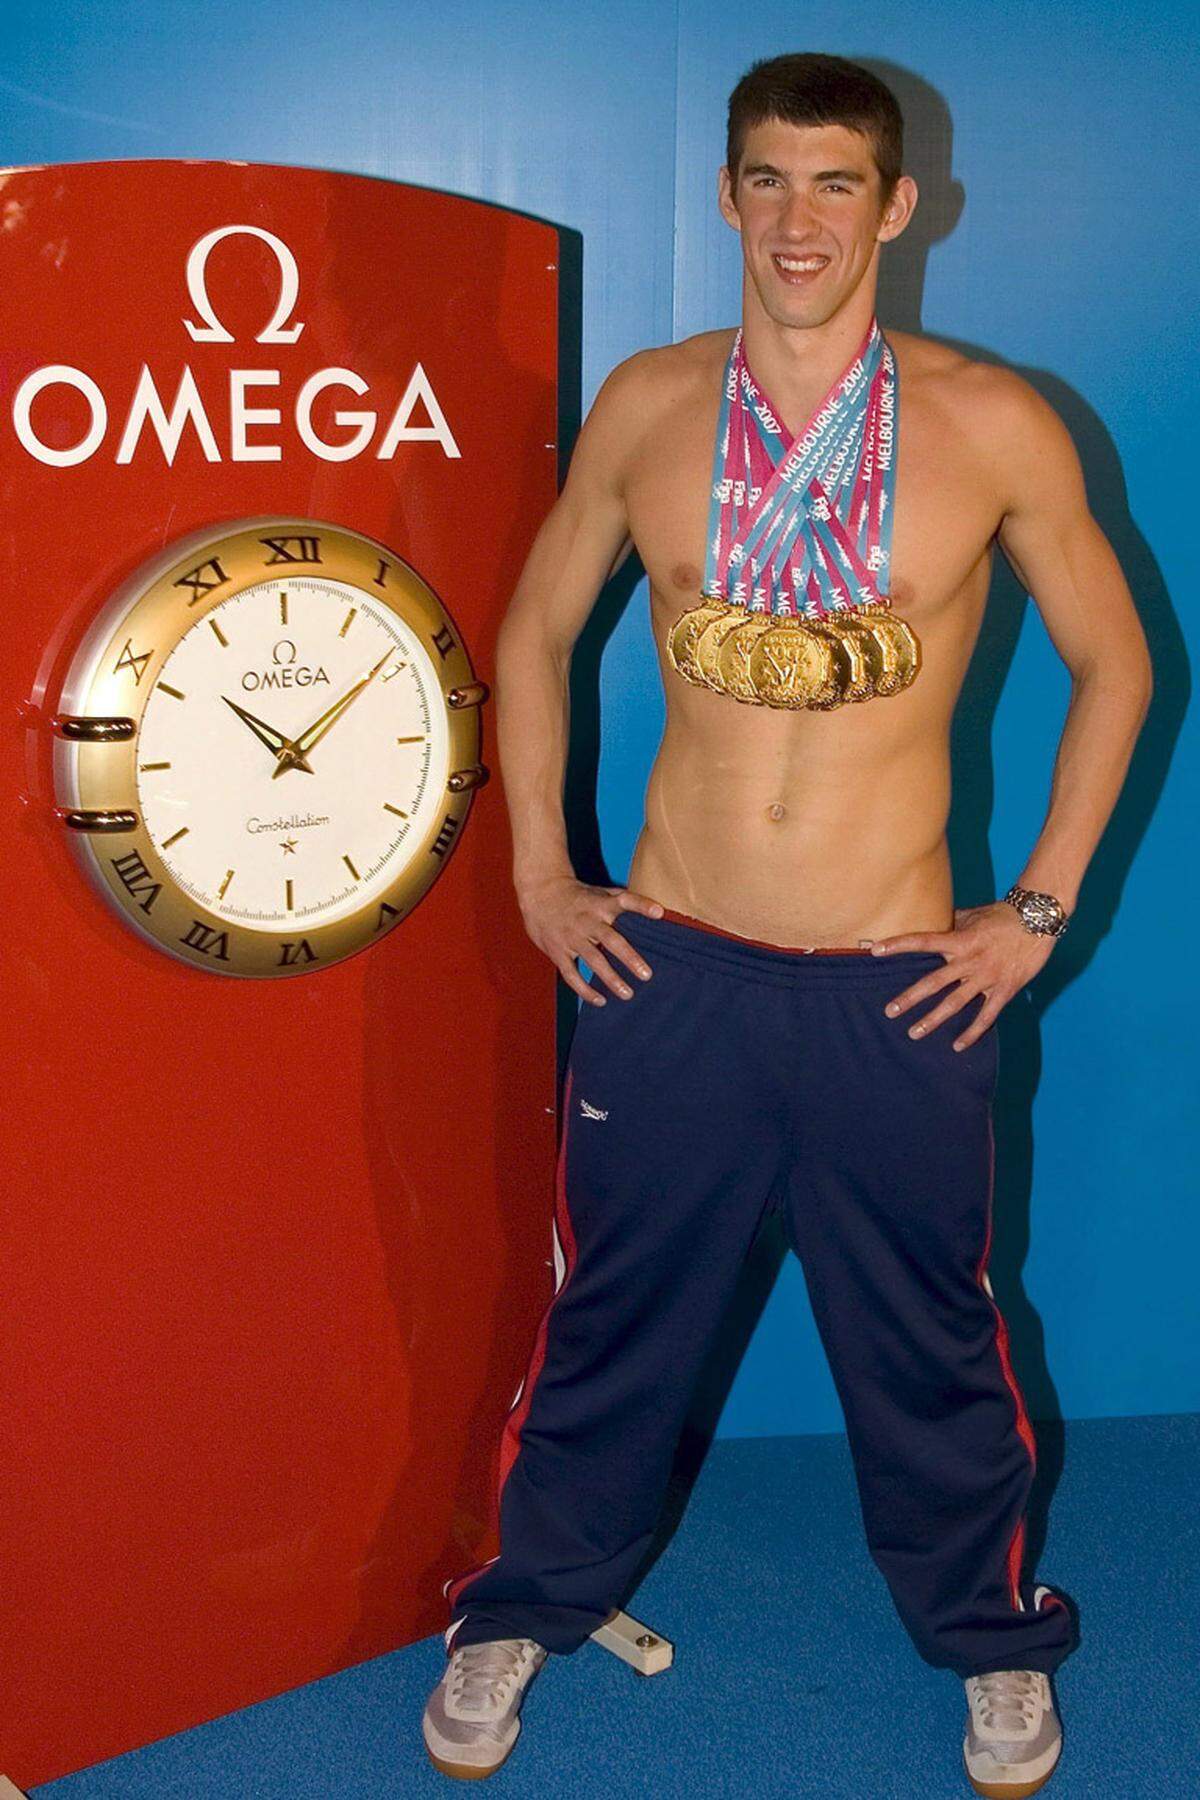 Mittlerweile ist Michael Phelps 21 Jahre alt und hat einen gewaltig kräftigen Nacken bekommen. Bei der Schwimm-WM in Melbourne konnte er diesen sehr gut gebrauchen. Am Ende stand eine selbst für den erfolgsverwöhnten Phelps beeindruckende Sammlung an Gold: Siebenmal konnte sich der Amerikaner mit der Goldmedaille behängen lassen (200 m Kraul, 100 m Delfin, 200 m Delfin, 200 m Lagen, 400 m Lagen, 4×100 m Freistil und 4×200 m Freistil).